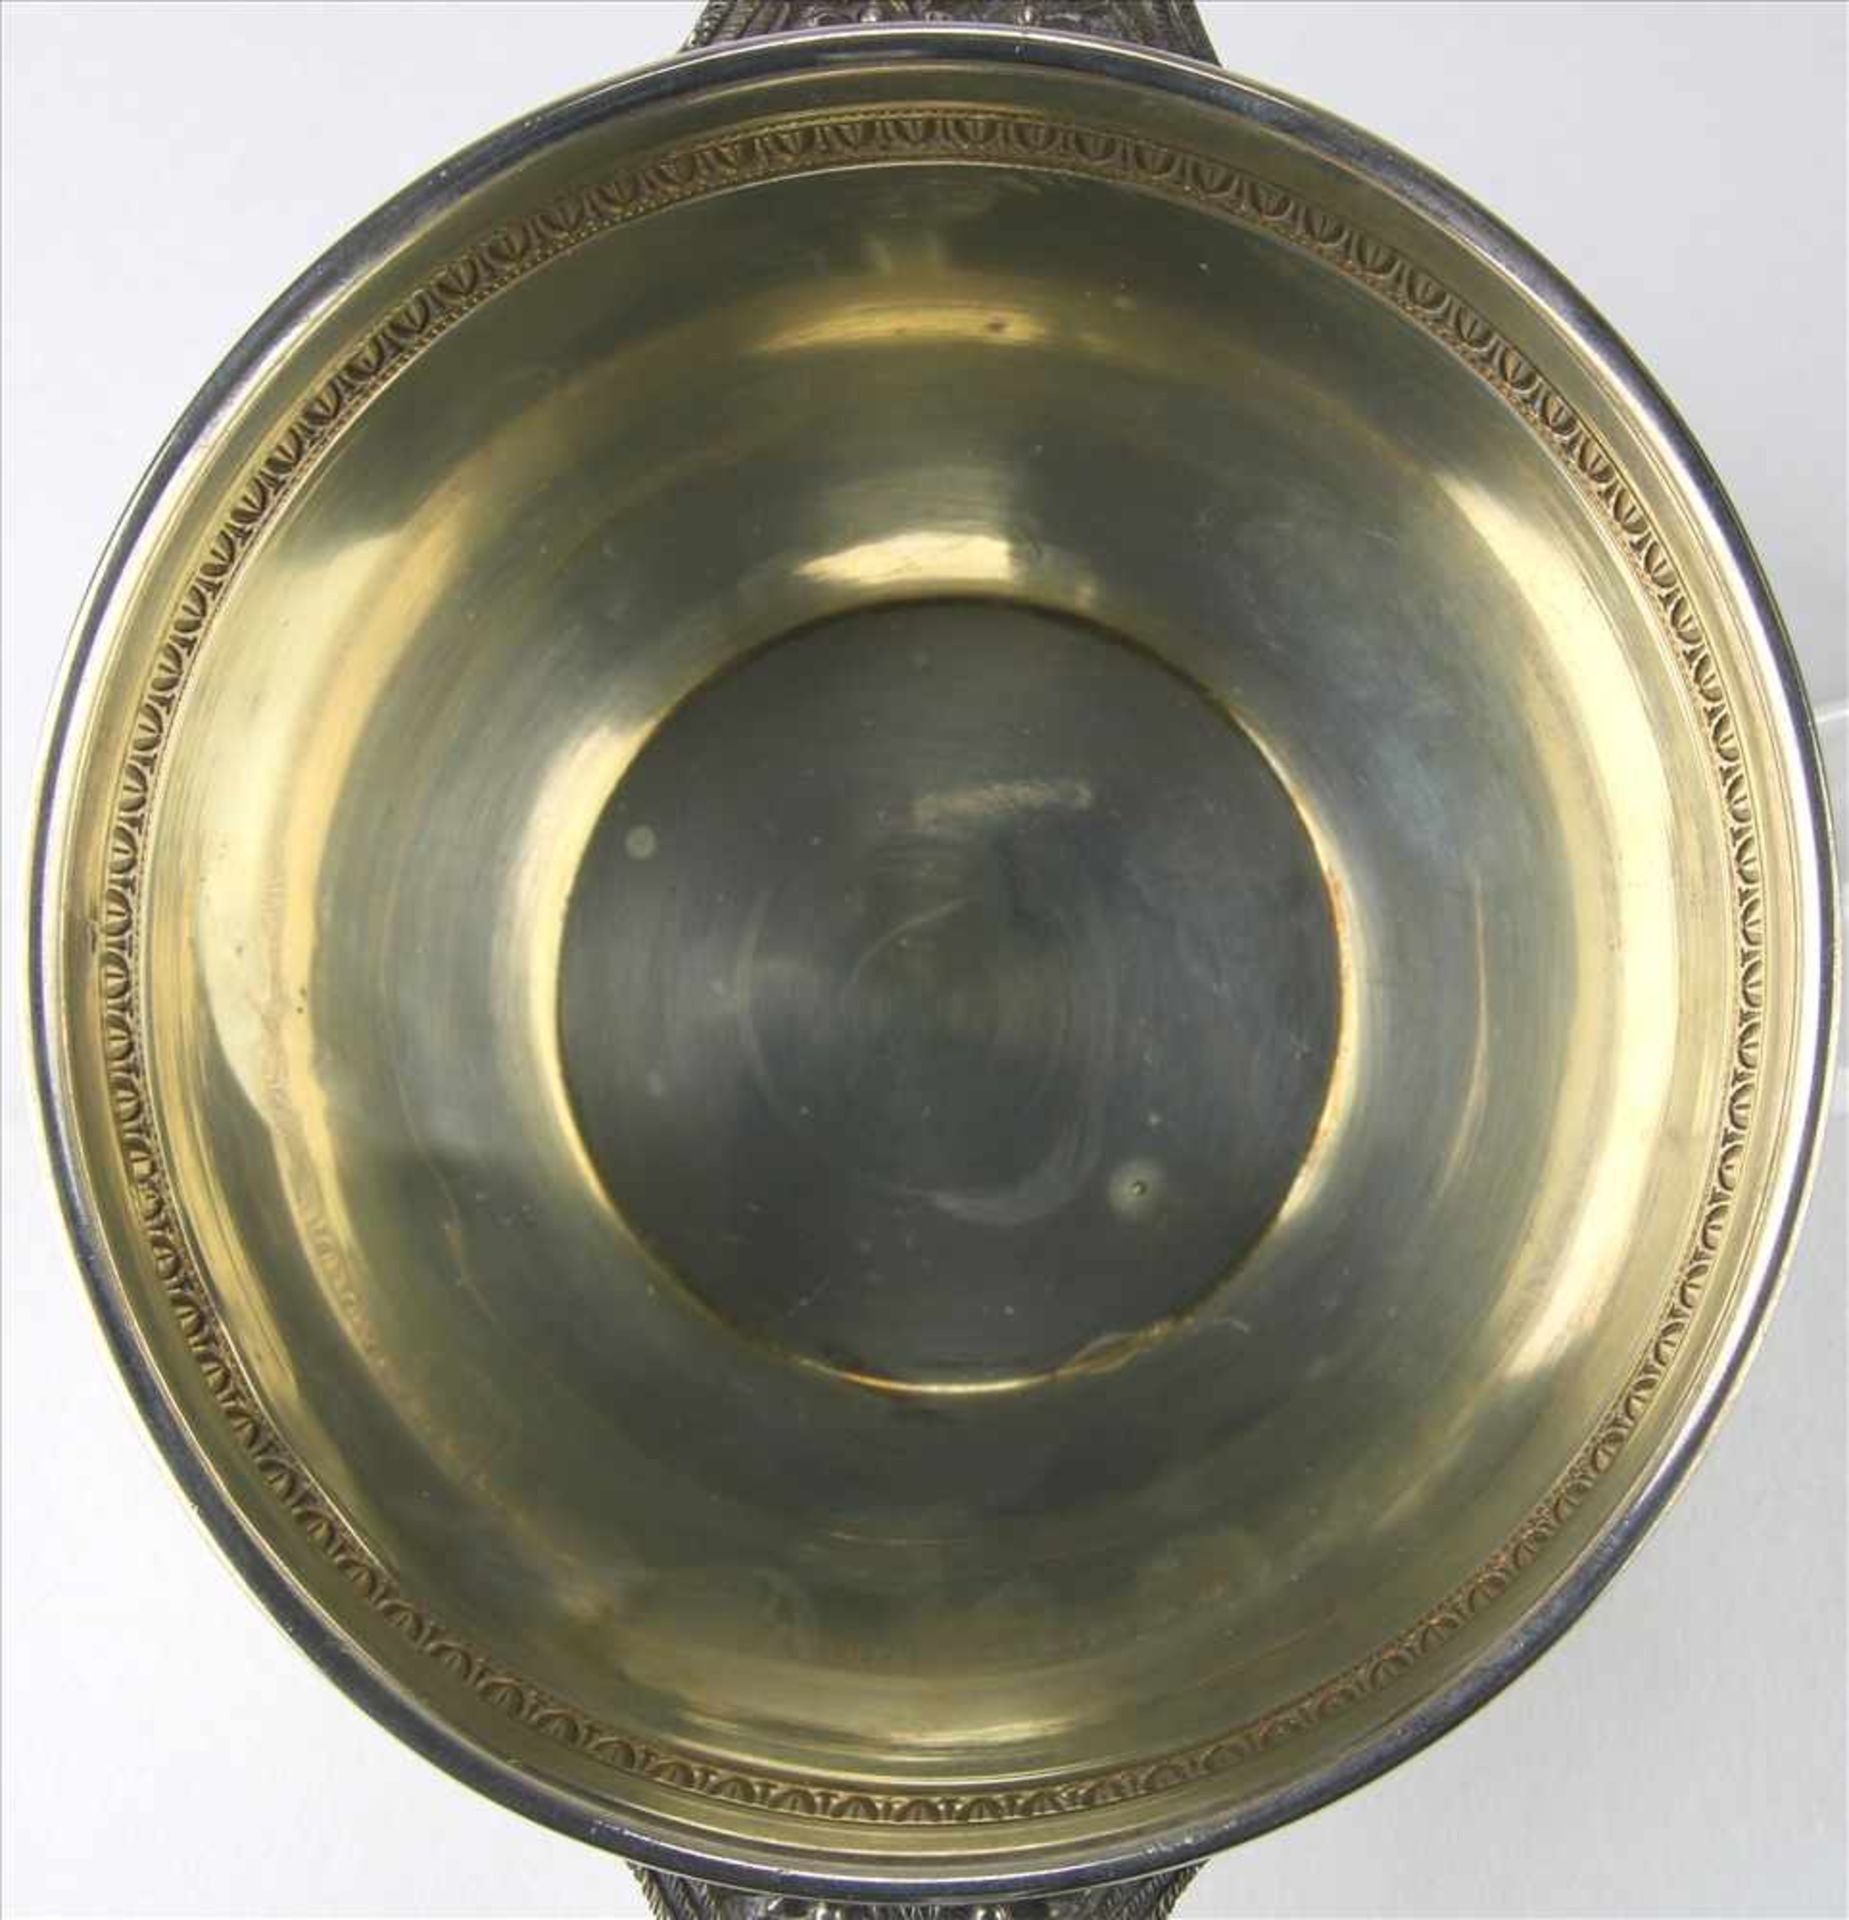 SilberschaleFrankreich, 19. Jahrhundert. Klassizistisch gestaltetes Schälchen. Innen ausvergoldet. - Image 5 of 7